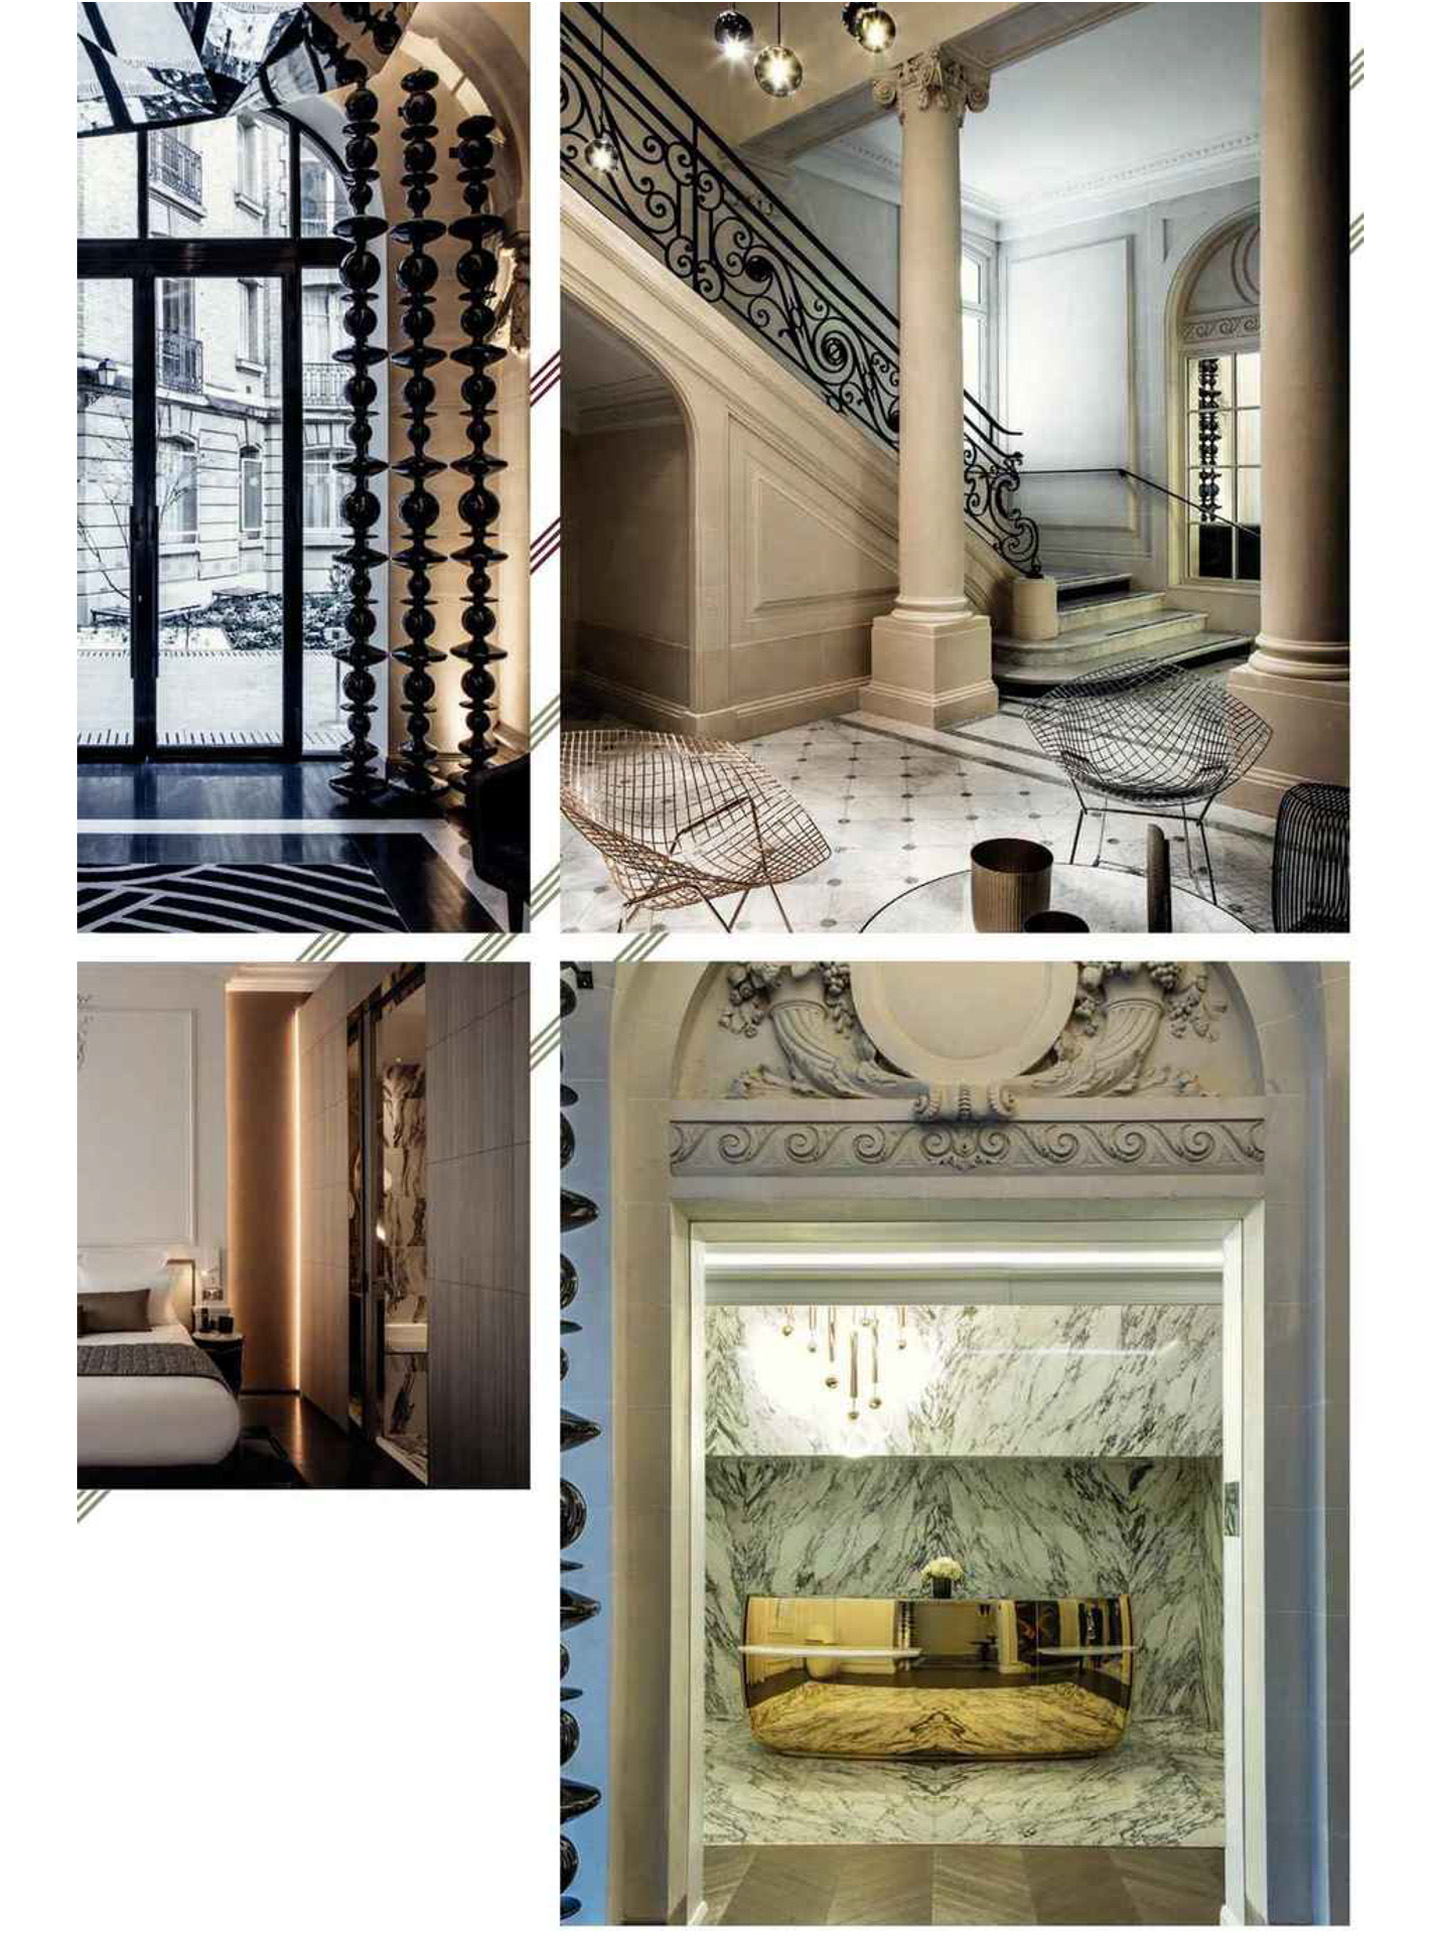 Article sur la clef champs elysées paris réalisé par le studio jean-Philippe Nuel dans le magazine domodéco, nouvel hotel lifestyle, architecture d'intérieur de luxe, paris centre, hotel de luxe français